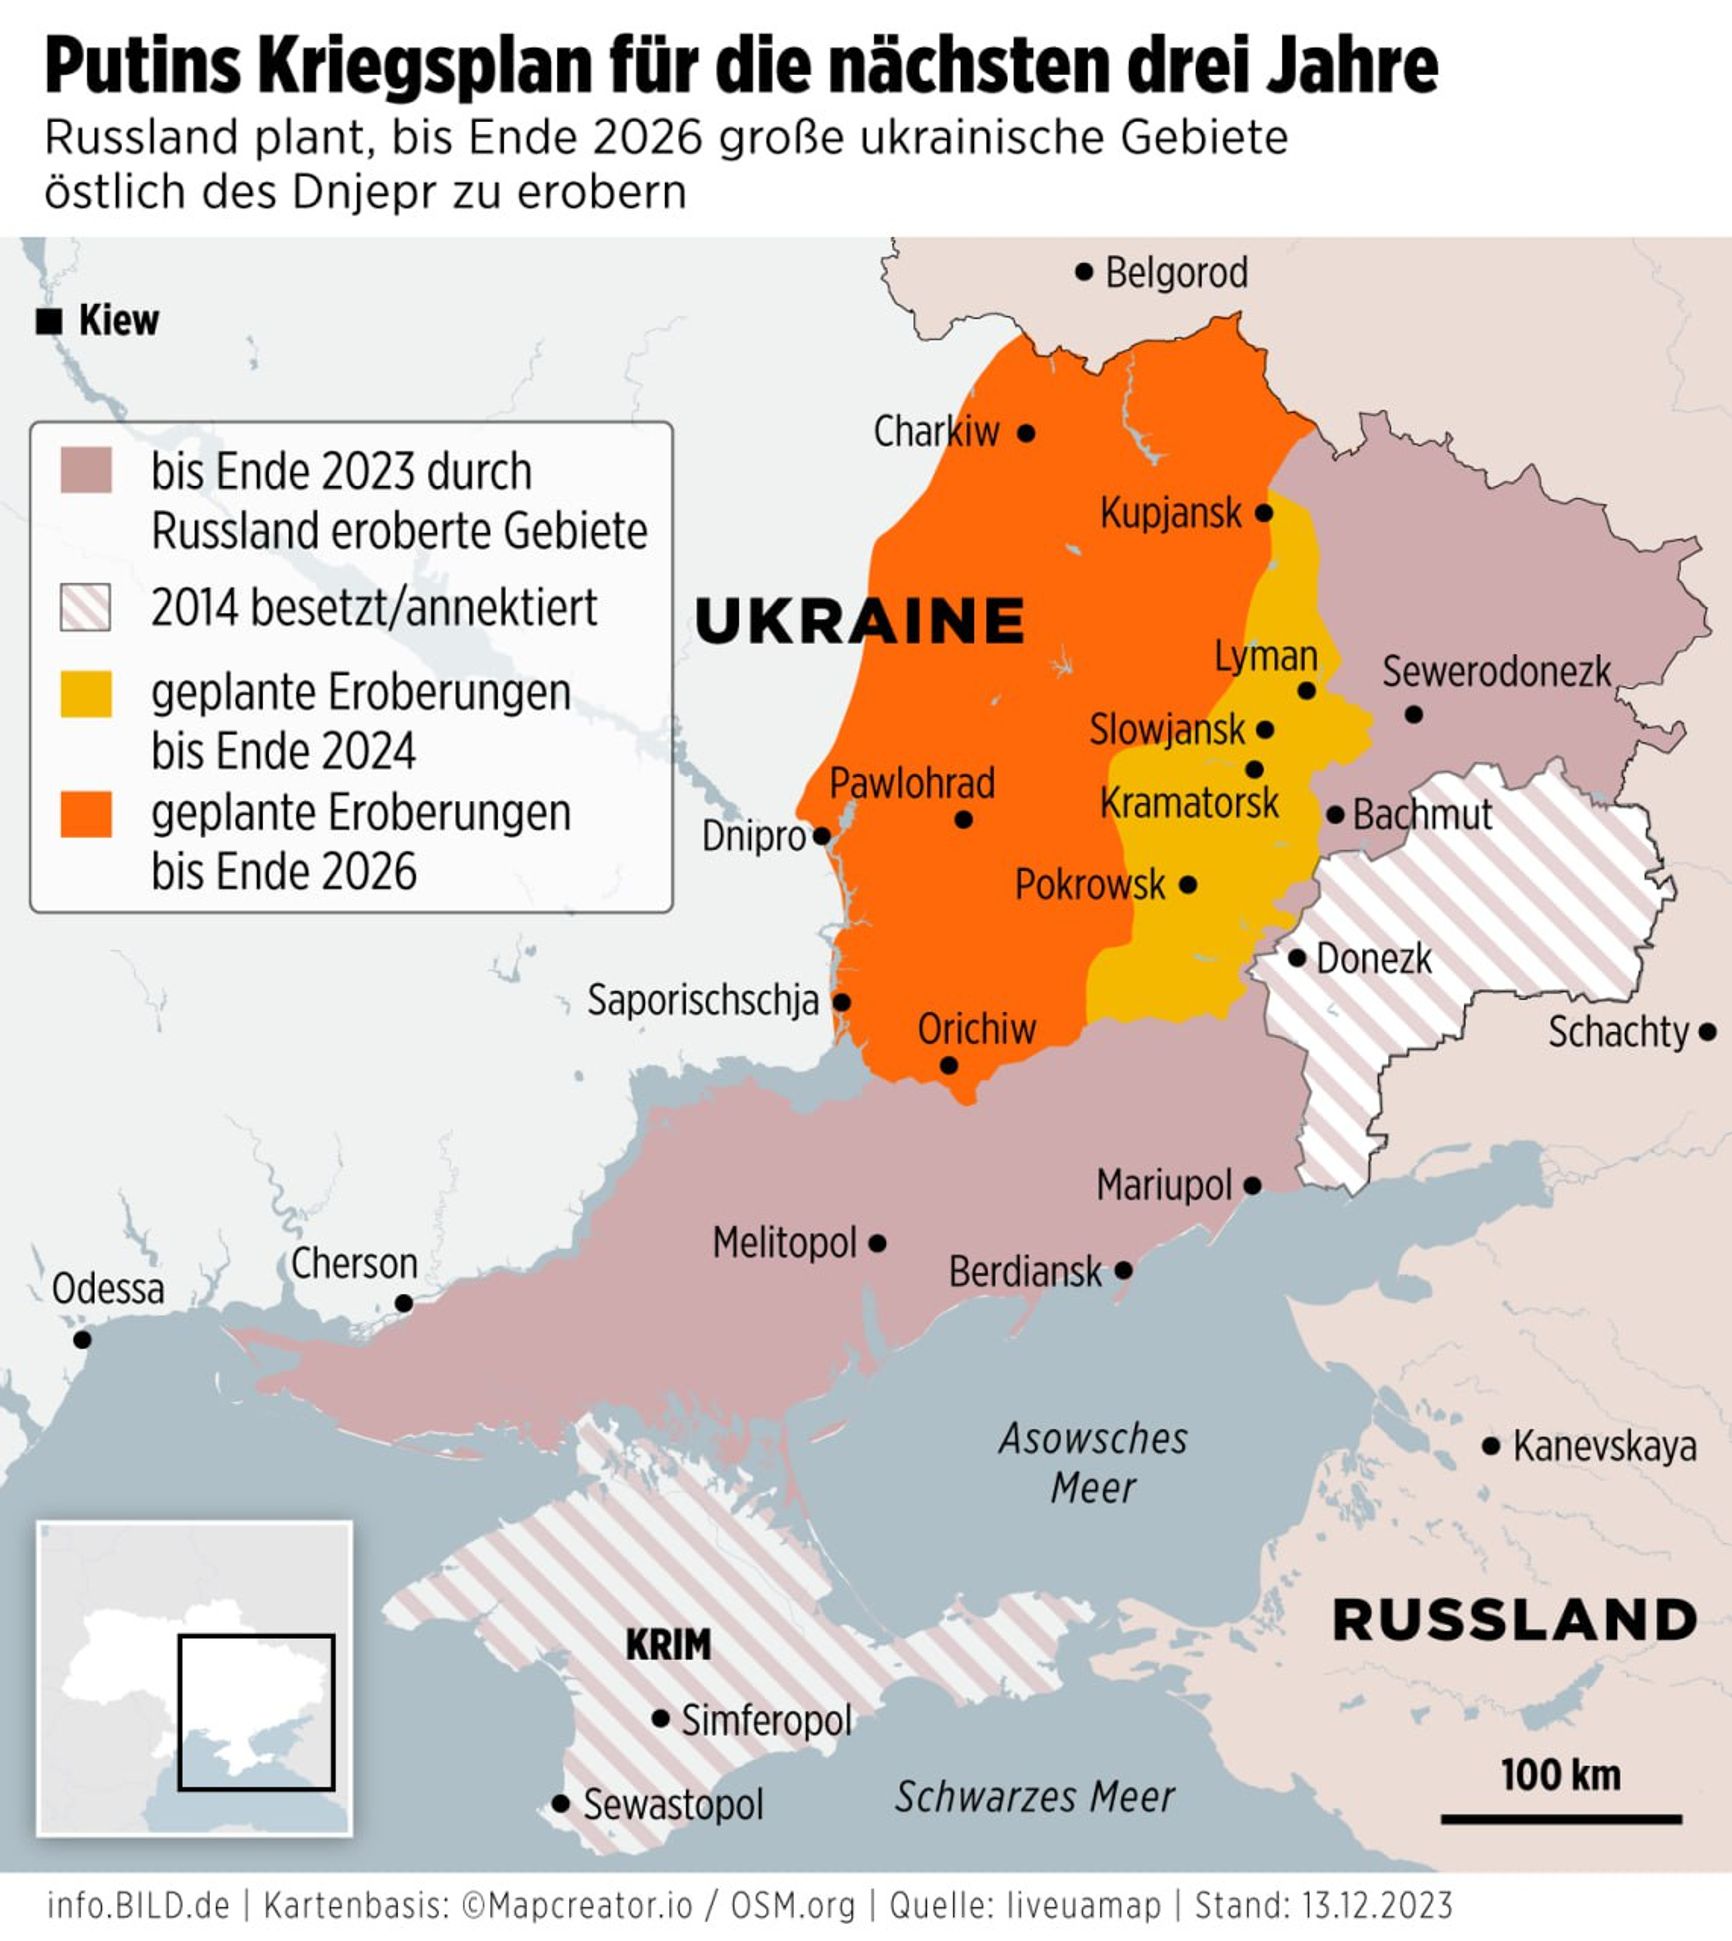 Предполагаемый план захвата Россией украинских территорий до 2026 года